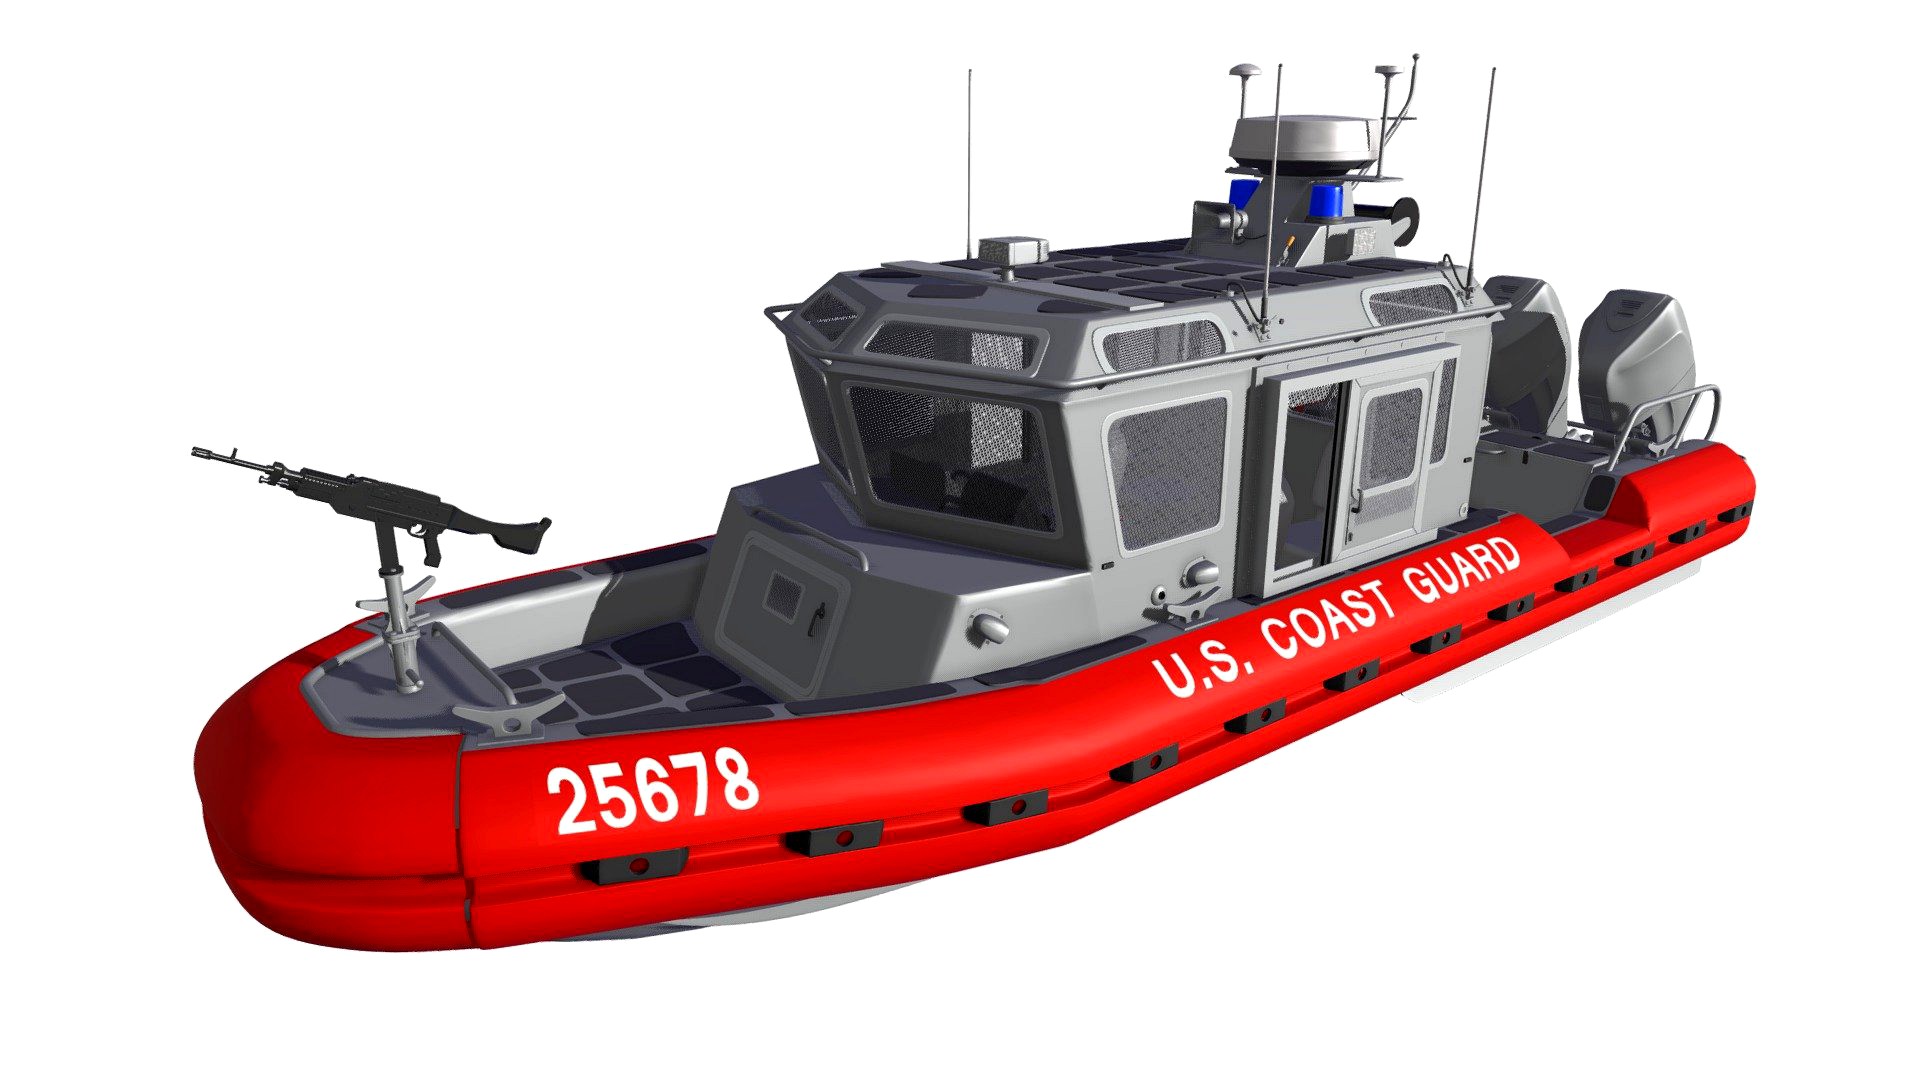 Coast Guard Defender Class Boat